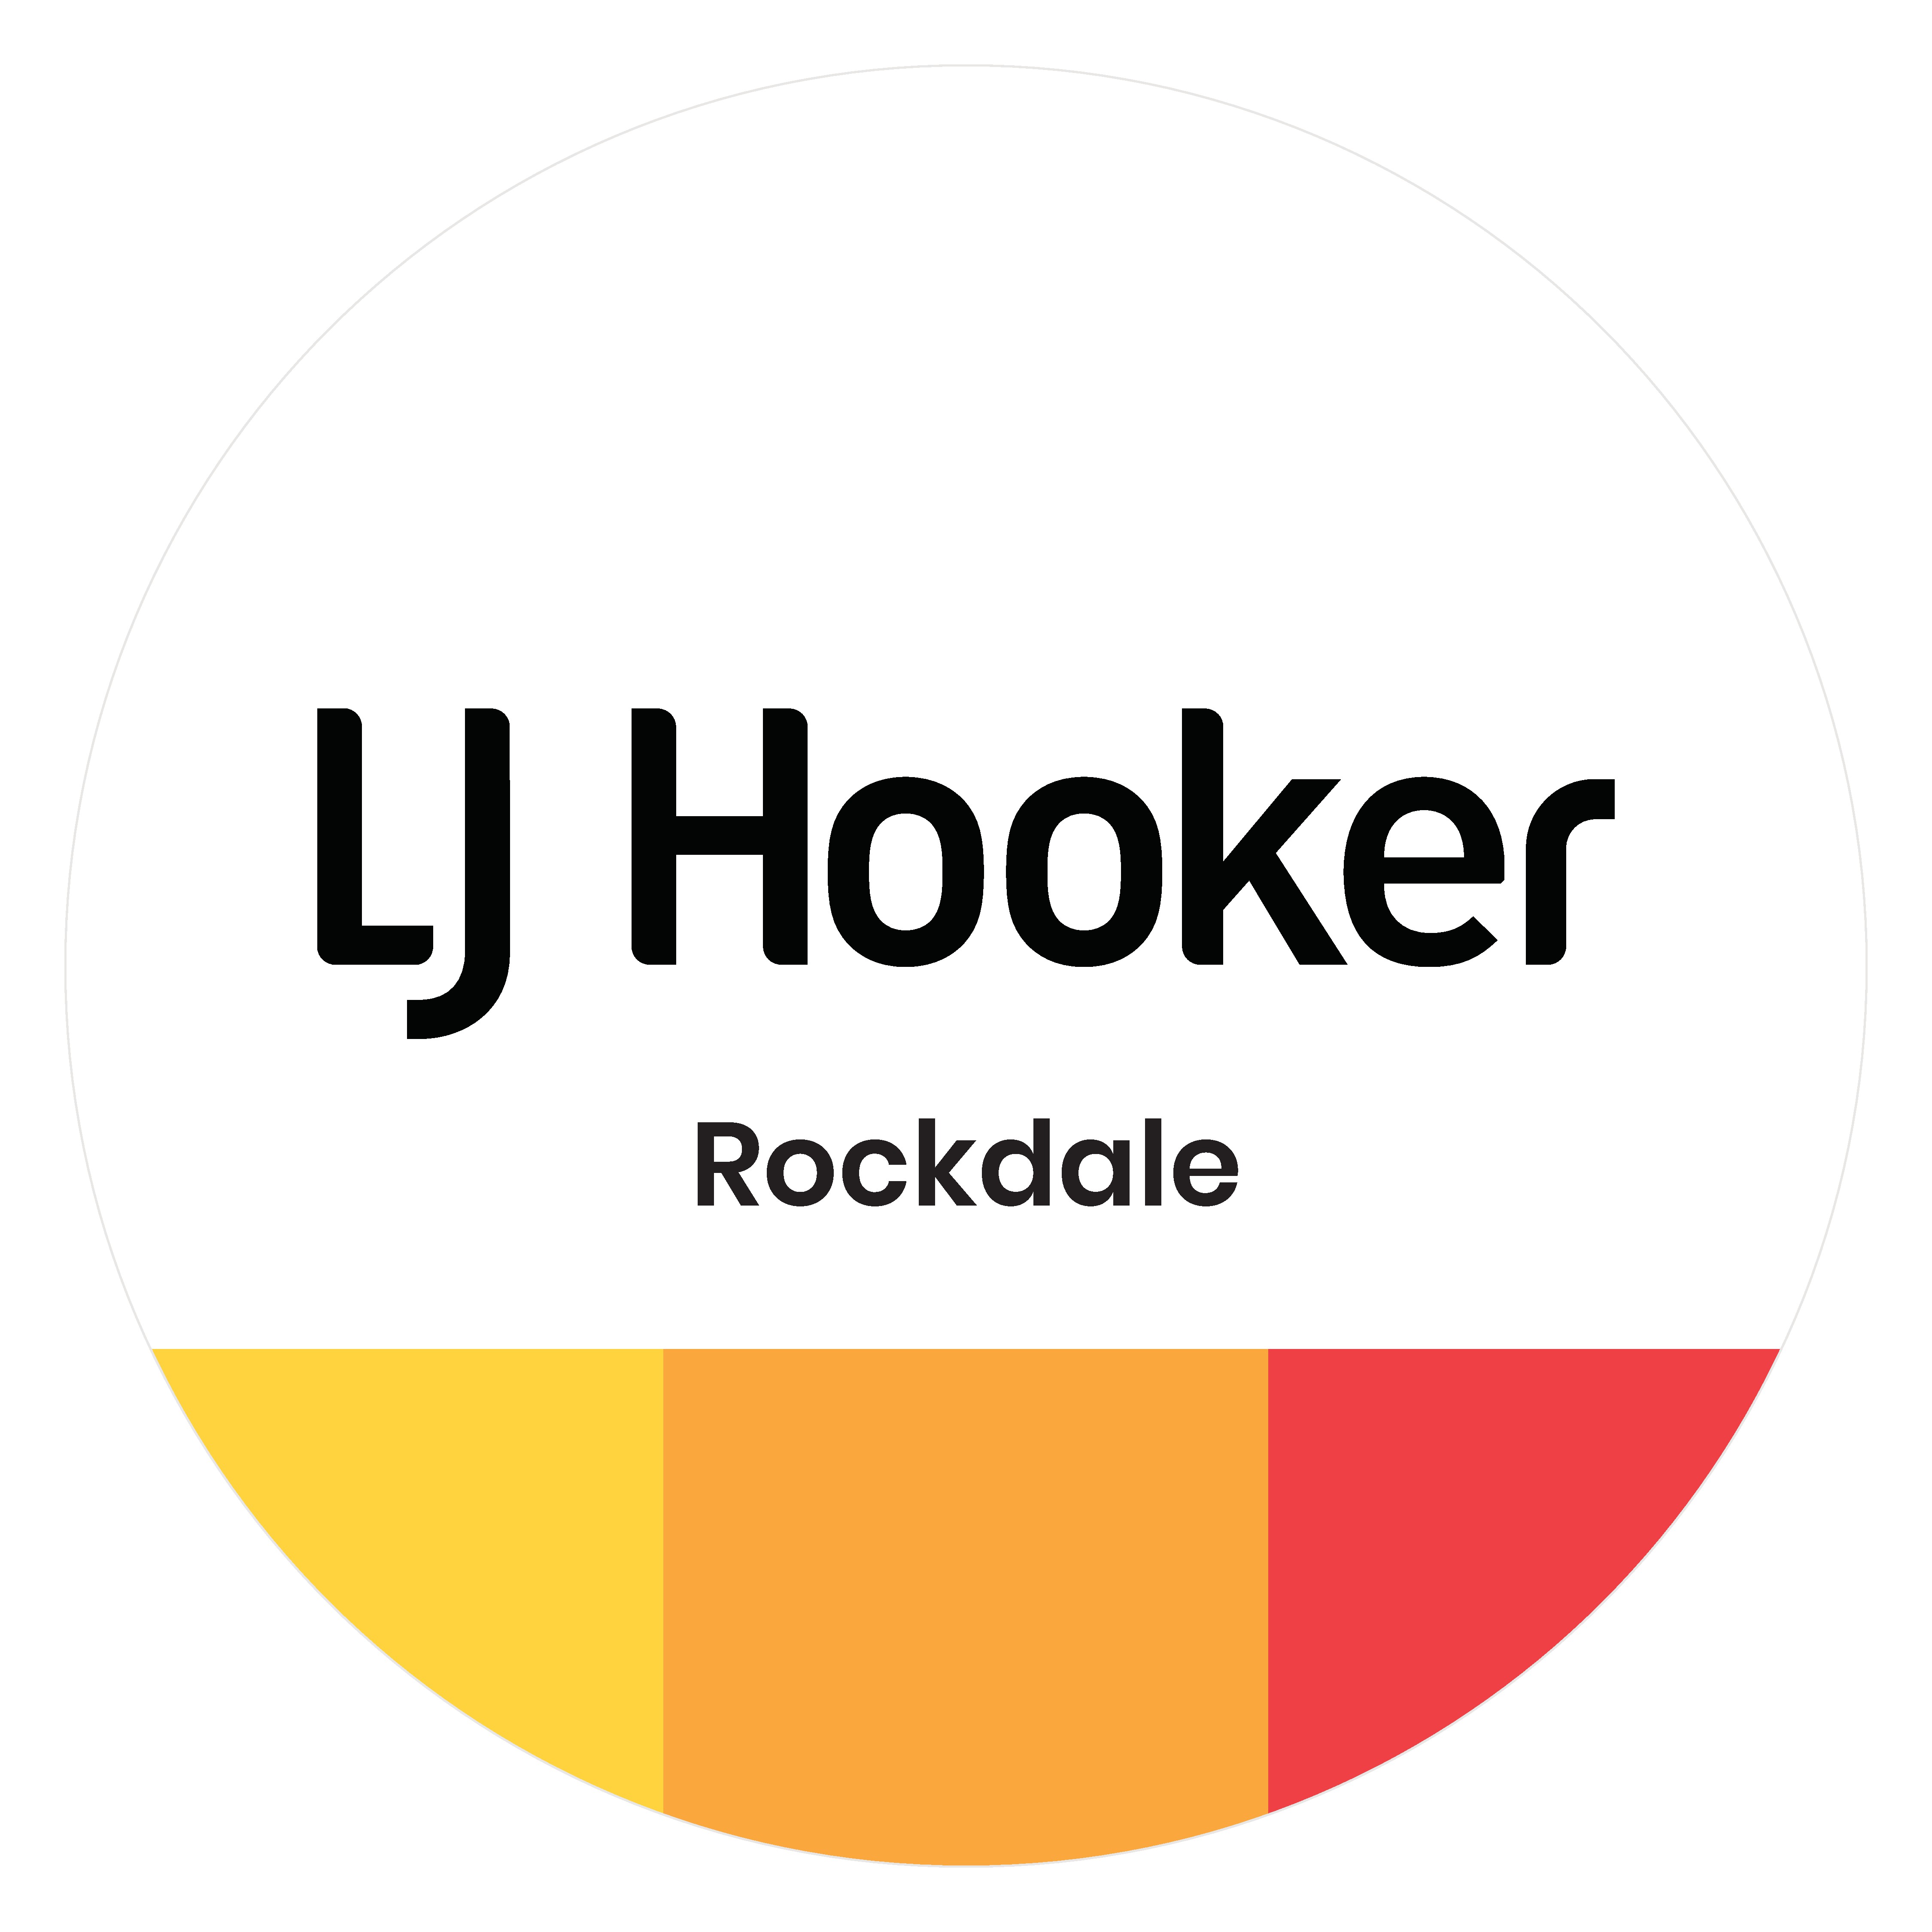 LJ Hooker Rockdale Real Estate Agent